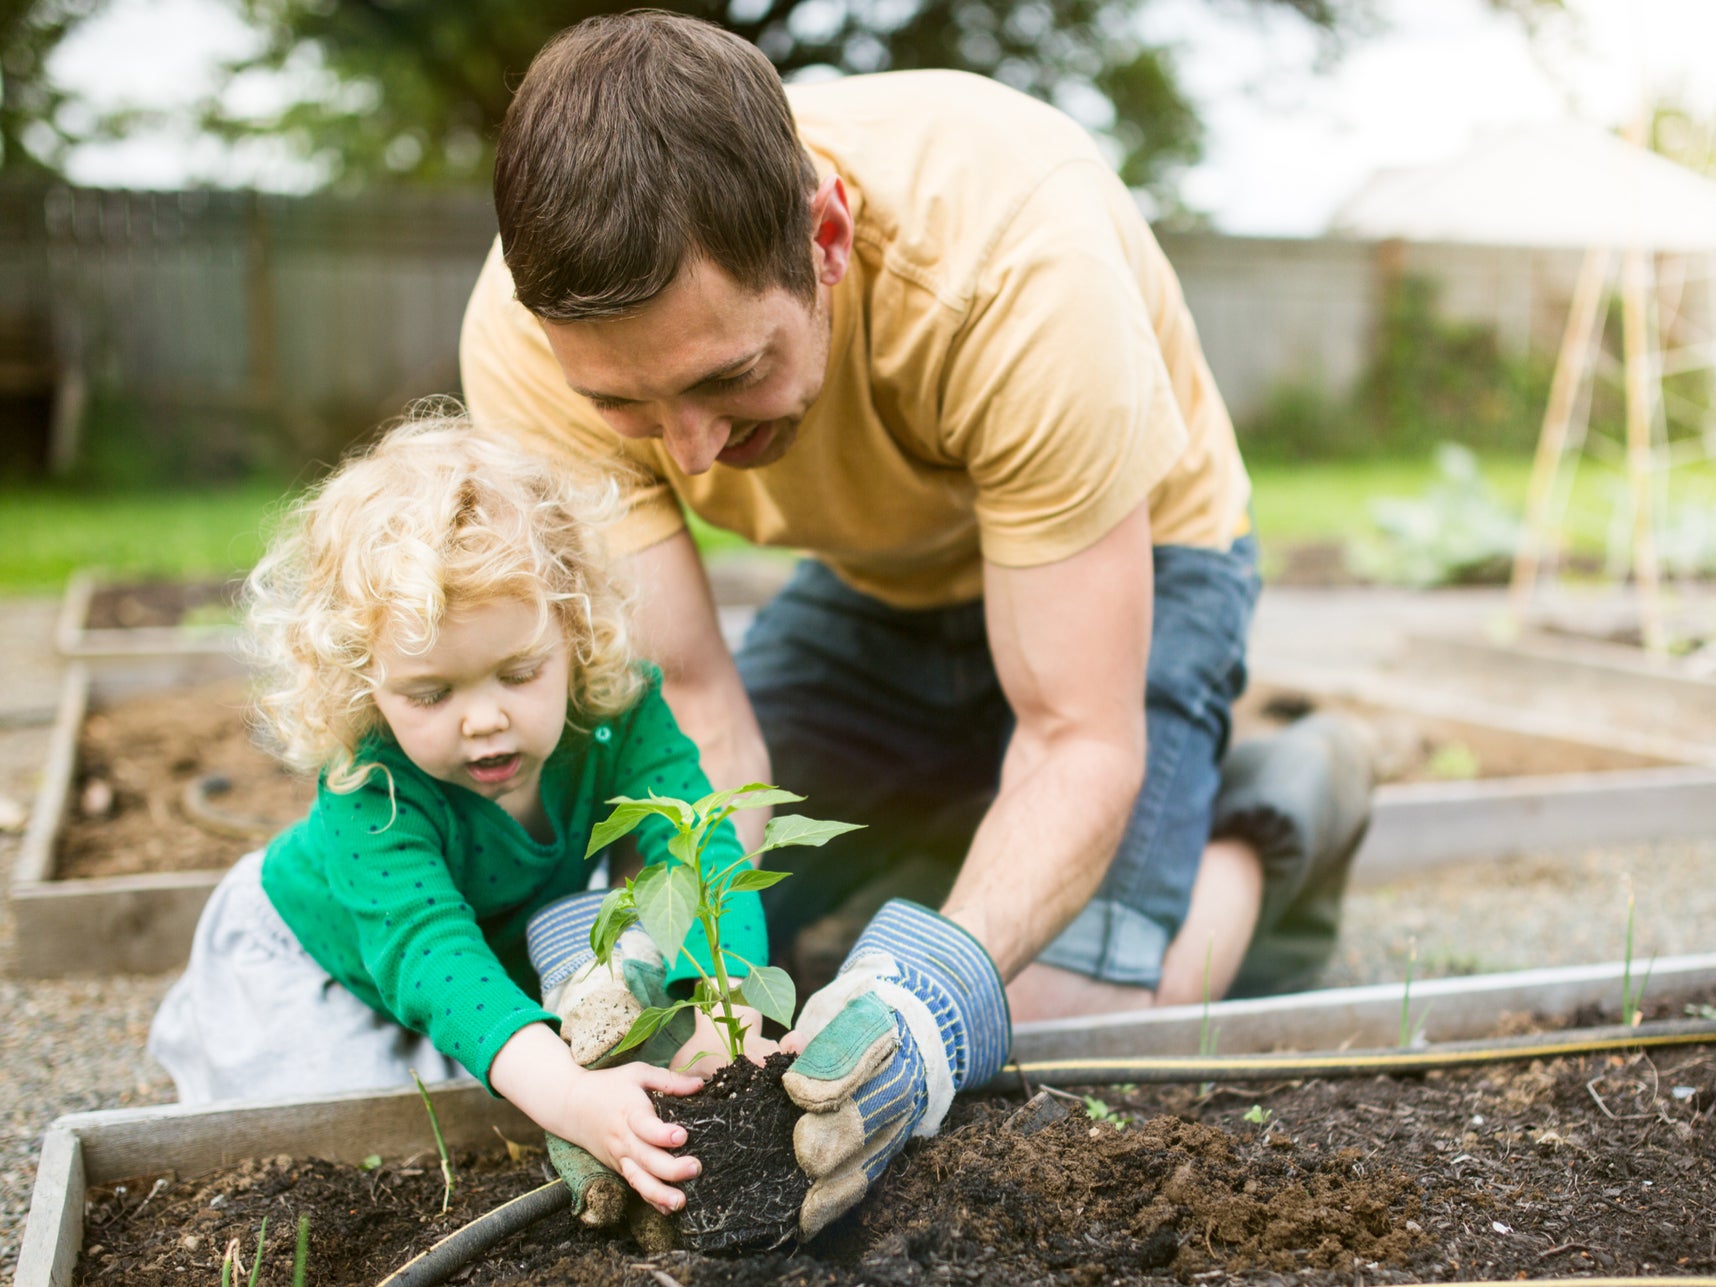 Cultivar la tierra y cuidar de la vida puede ser beneficioso a nivel social, por lo que los jardines comunitarios se han convertido en puntos de unión, vínculo y bienestar para muchas personas